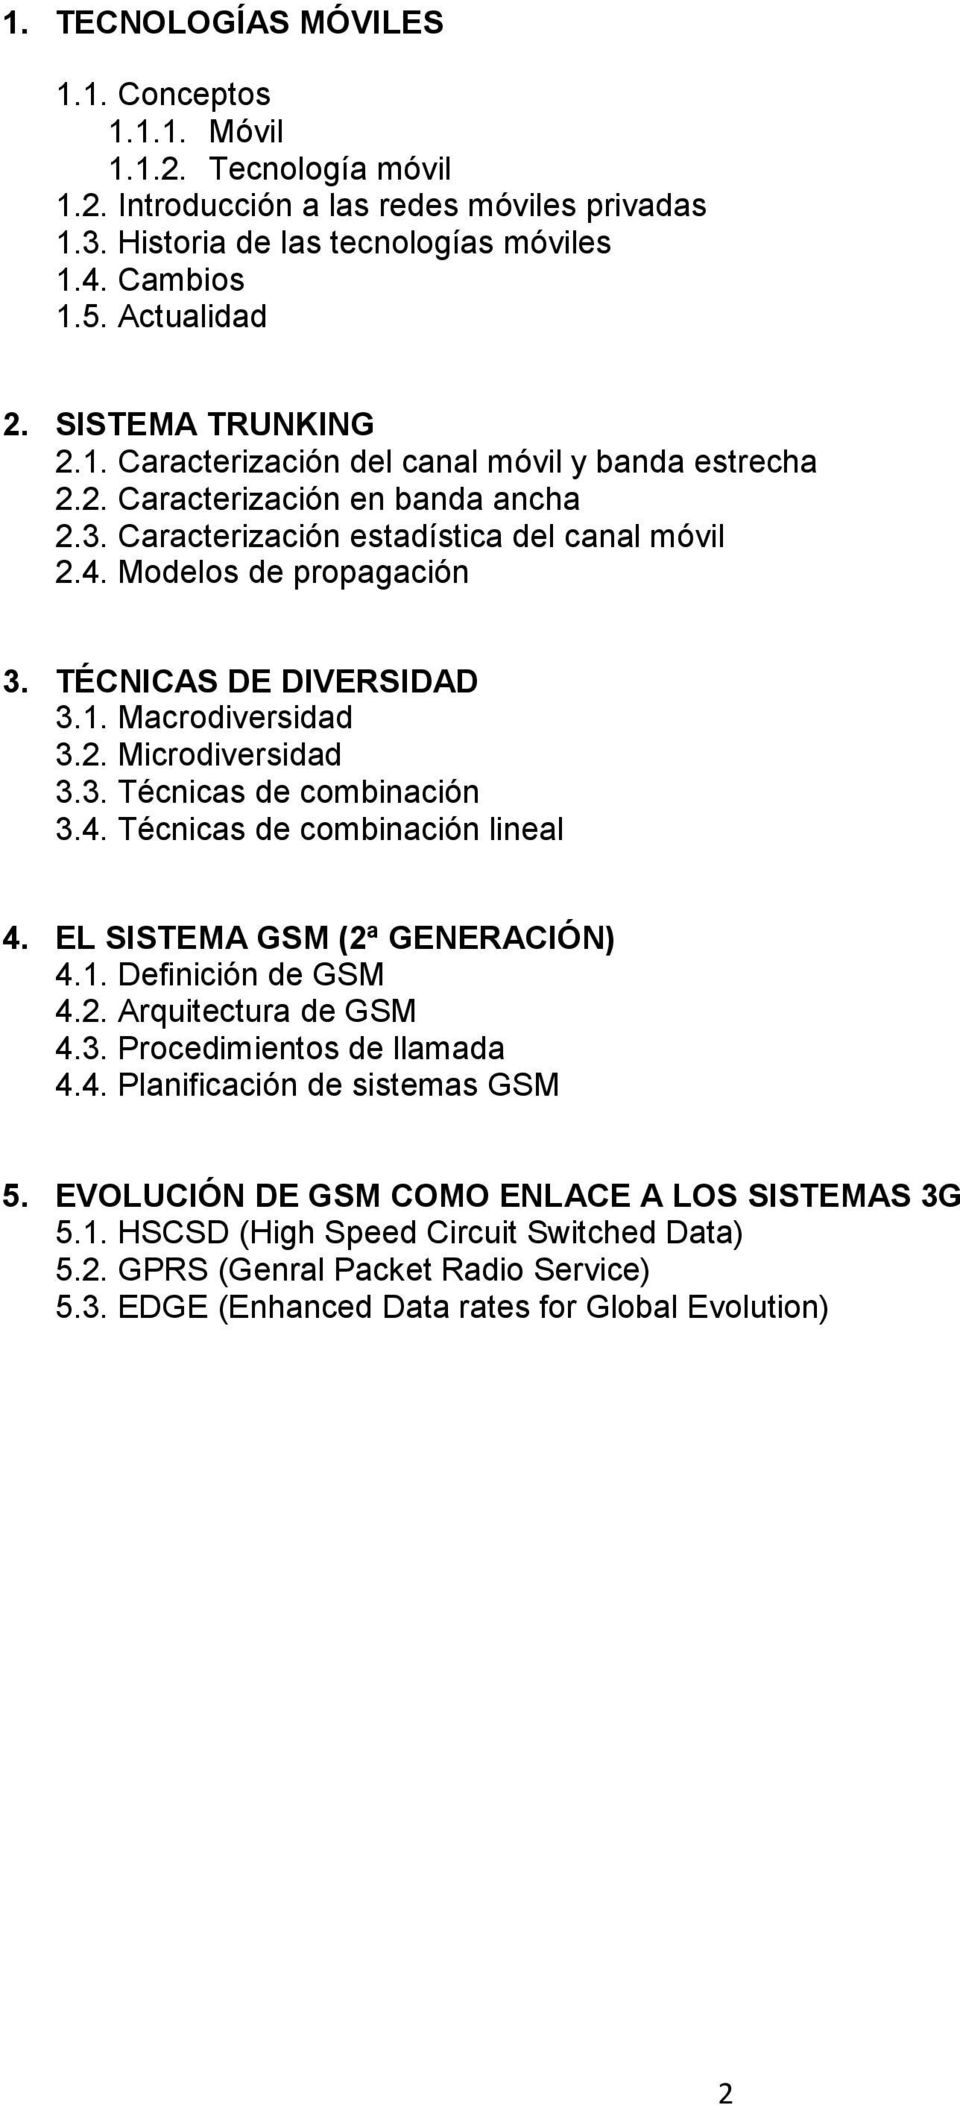 TÉCNICAS DE DIVERSIDAD 3.1. Macrodiversidad 3.2. Microdiversidad 3.3. Técnicas de combinación 3.4. Técnicas de combinación lineal 4. EL SISTEMA GSM (2ª GENERACIÓN) 4.1. Definición de GSM 4.2. Arquitectura de GSM 4.